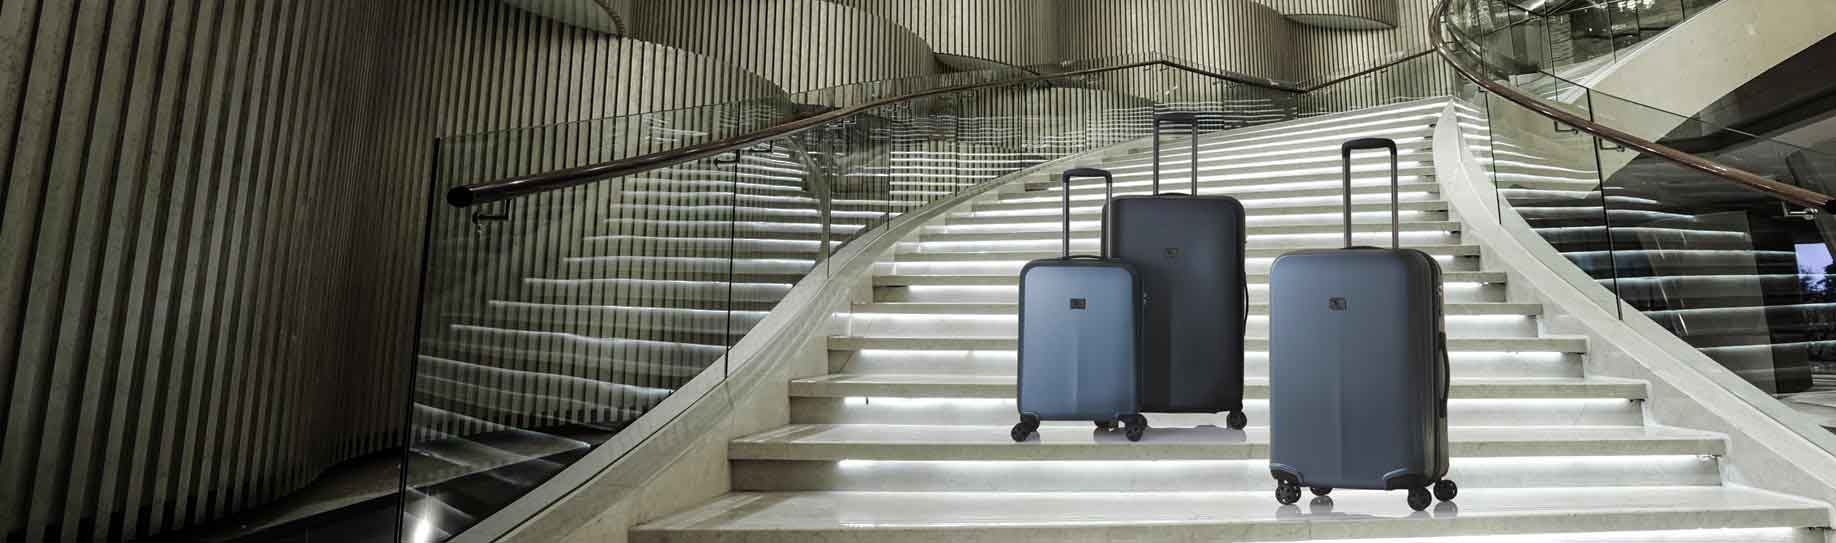 Koffer Kabinengepäck Koffer auf Treppe Schwarz Grau Blau